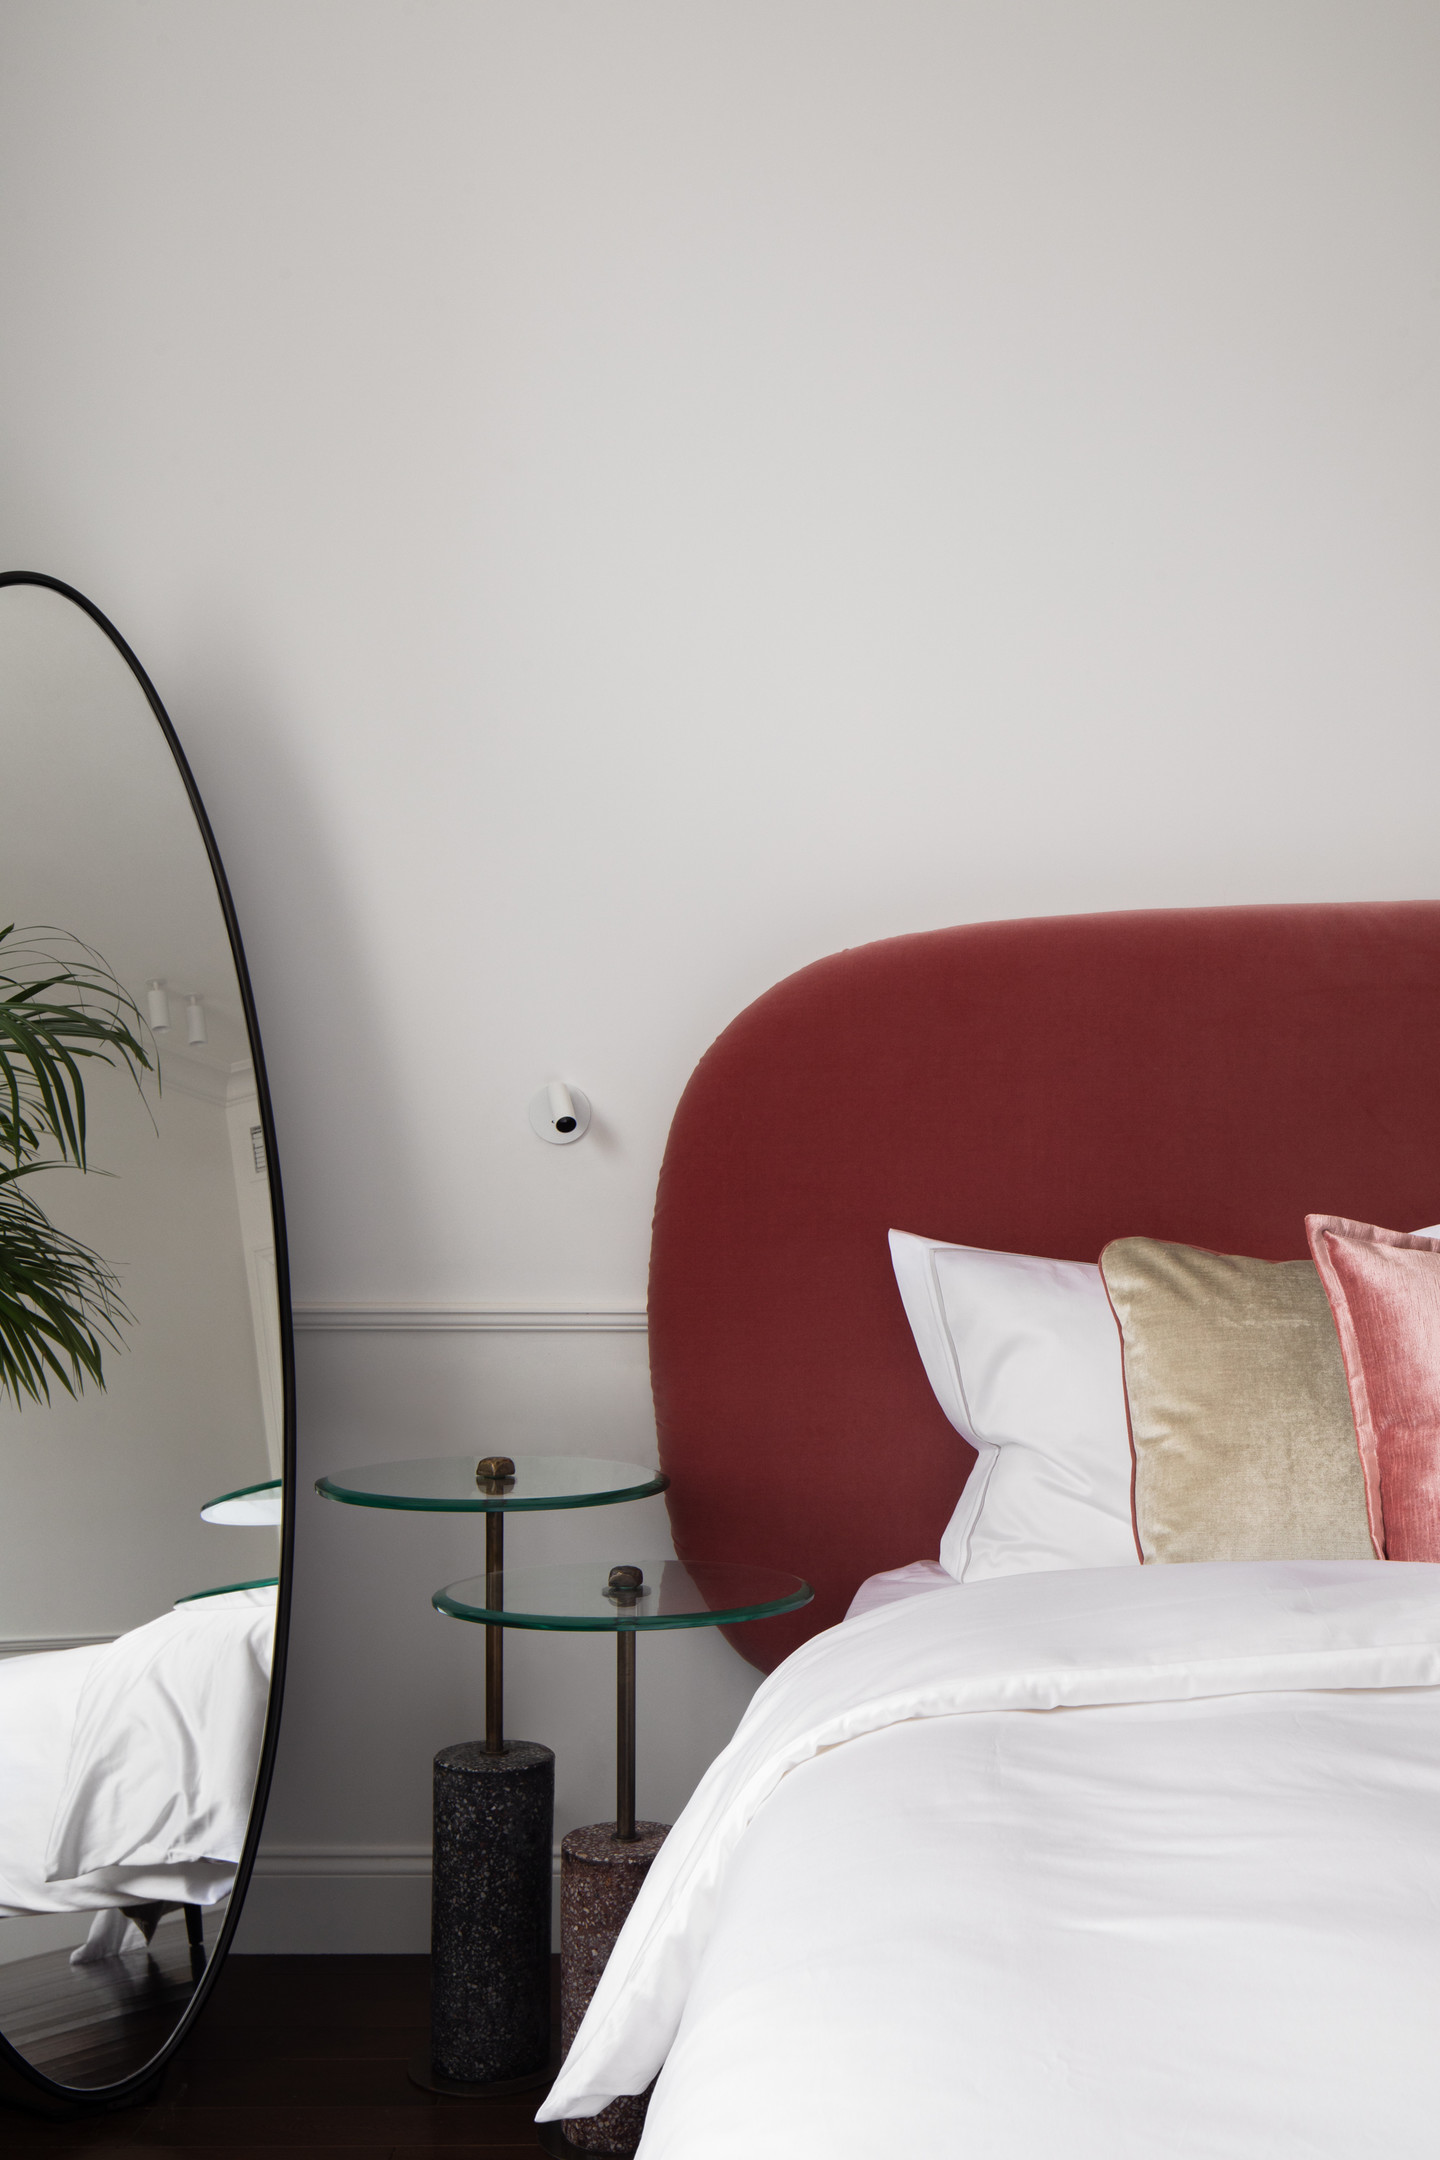 Tin chắc rằng, ấn tượng đầu tiên của bạn khi bước vào phòng ngủ này chính là đầu giường màu đỏ mận với đường cong mềm mại. Những đường cong này hoàn toàn tương thích với tấm gương hình oval và 2 chiếc bàn phụ mặt kính tròn tạo nên sự thống nhất về đường nét thiết kế.